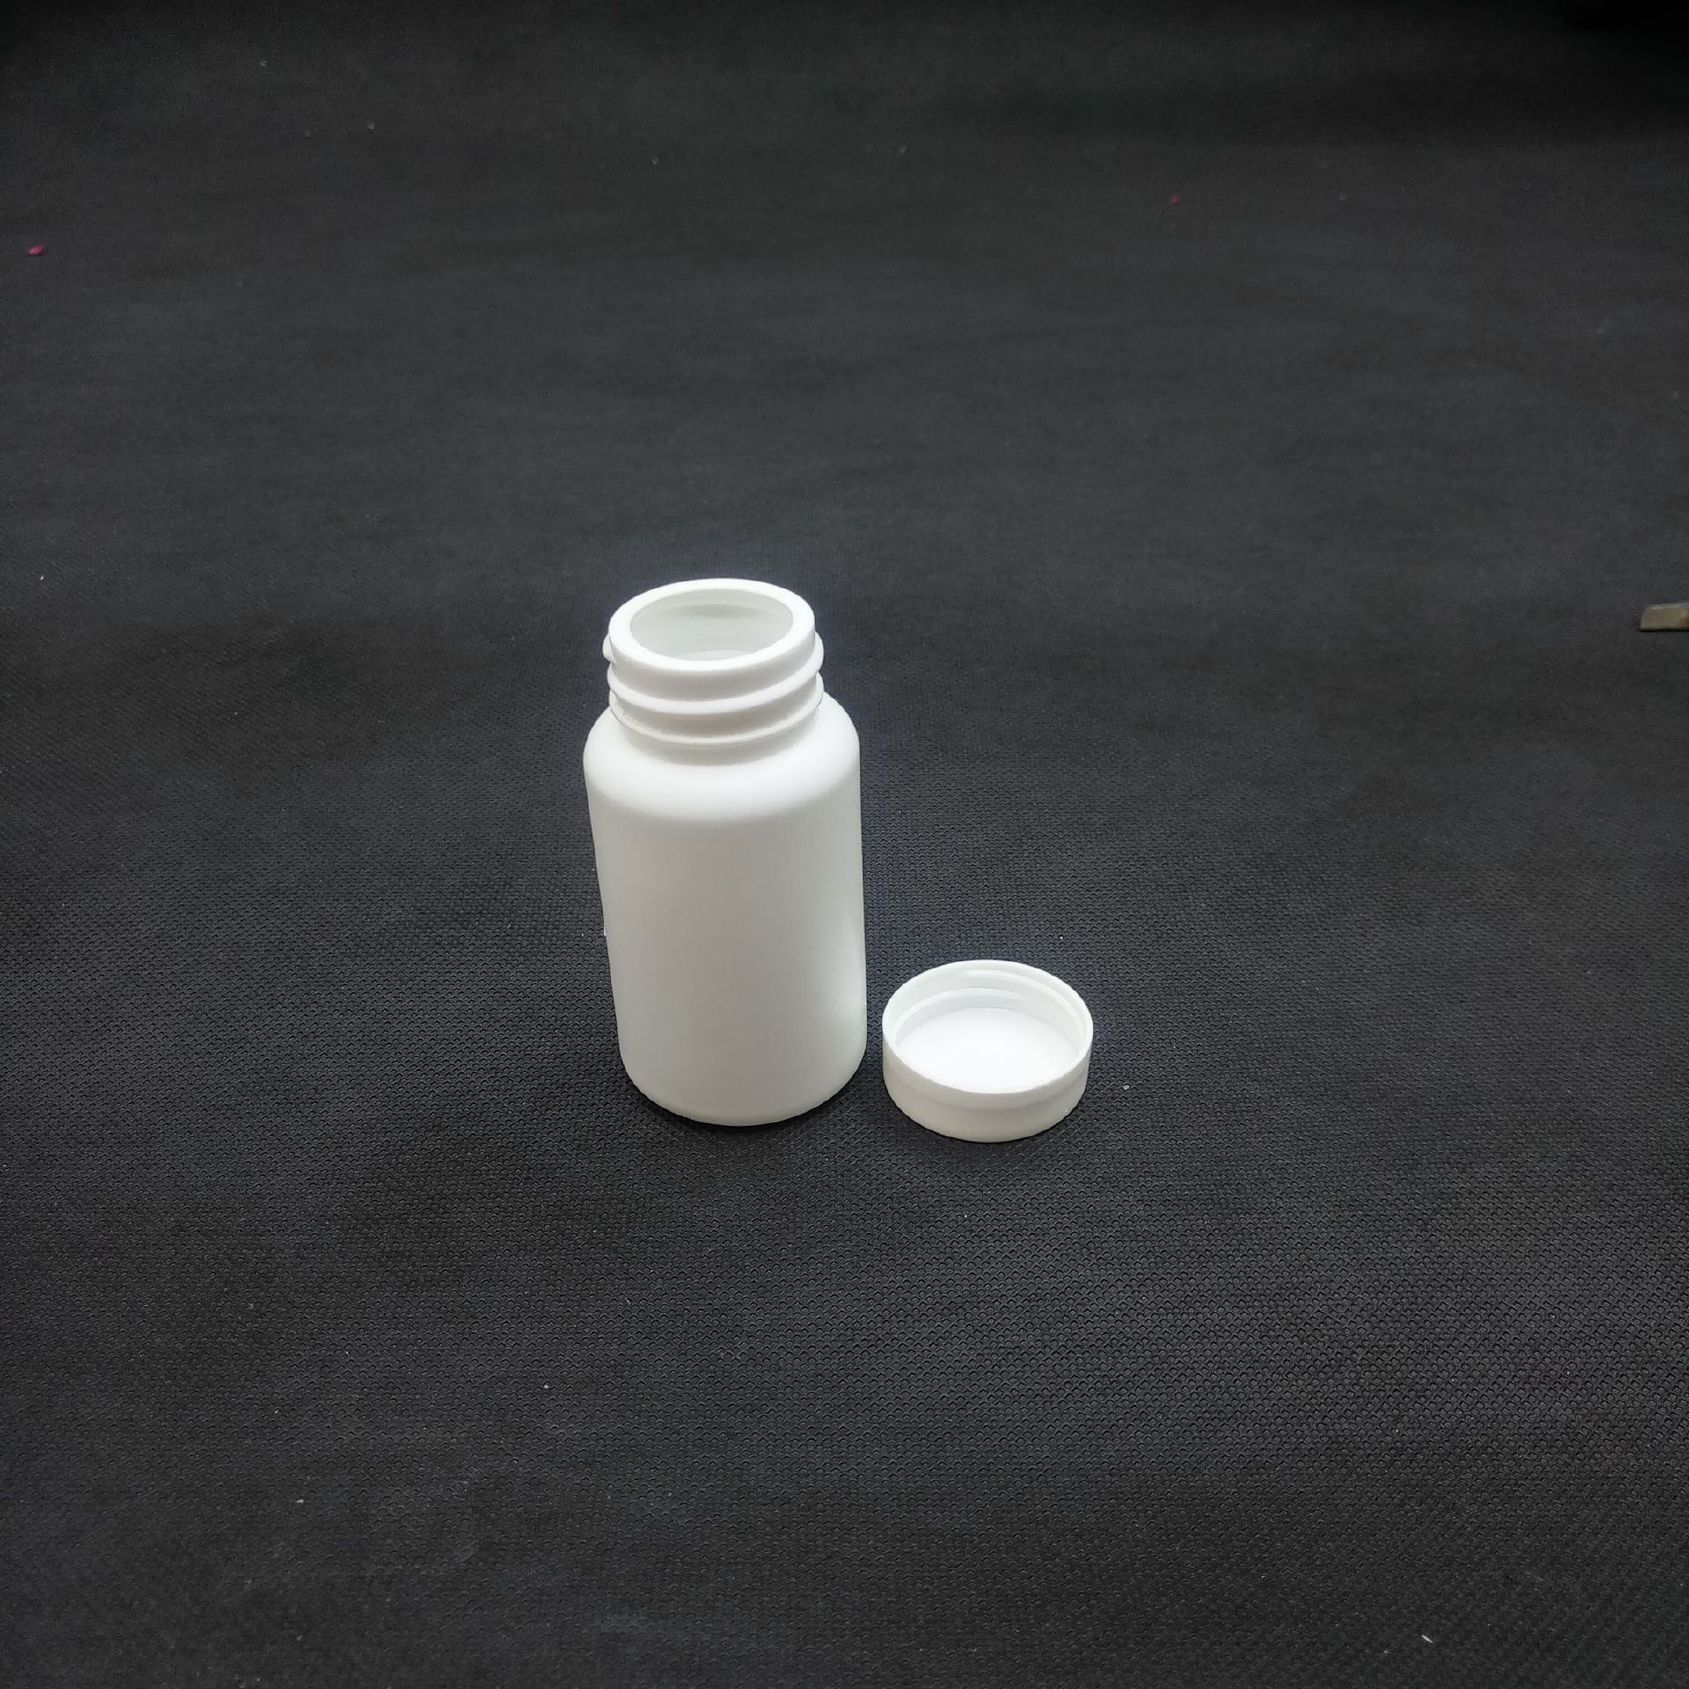 厂家批发50g高密度聚乙烯大口粉瓶兽药鱼药保健品瓶示例图7